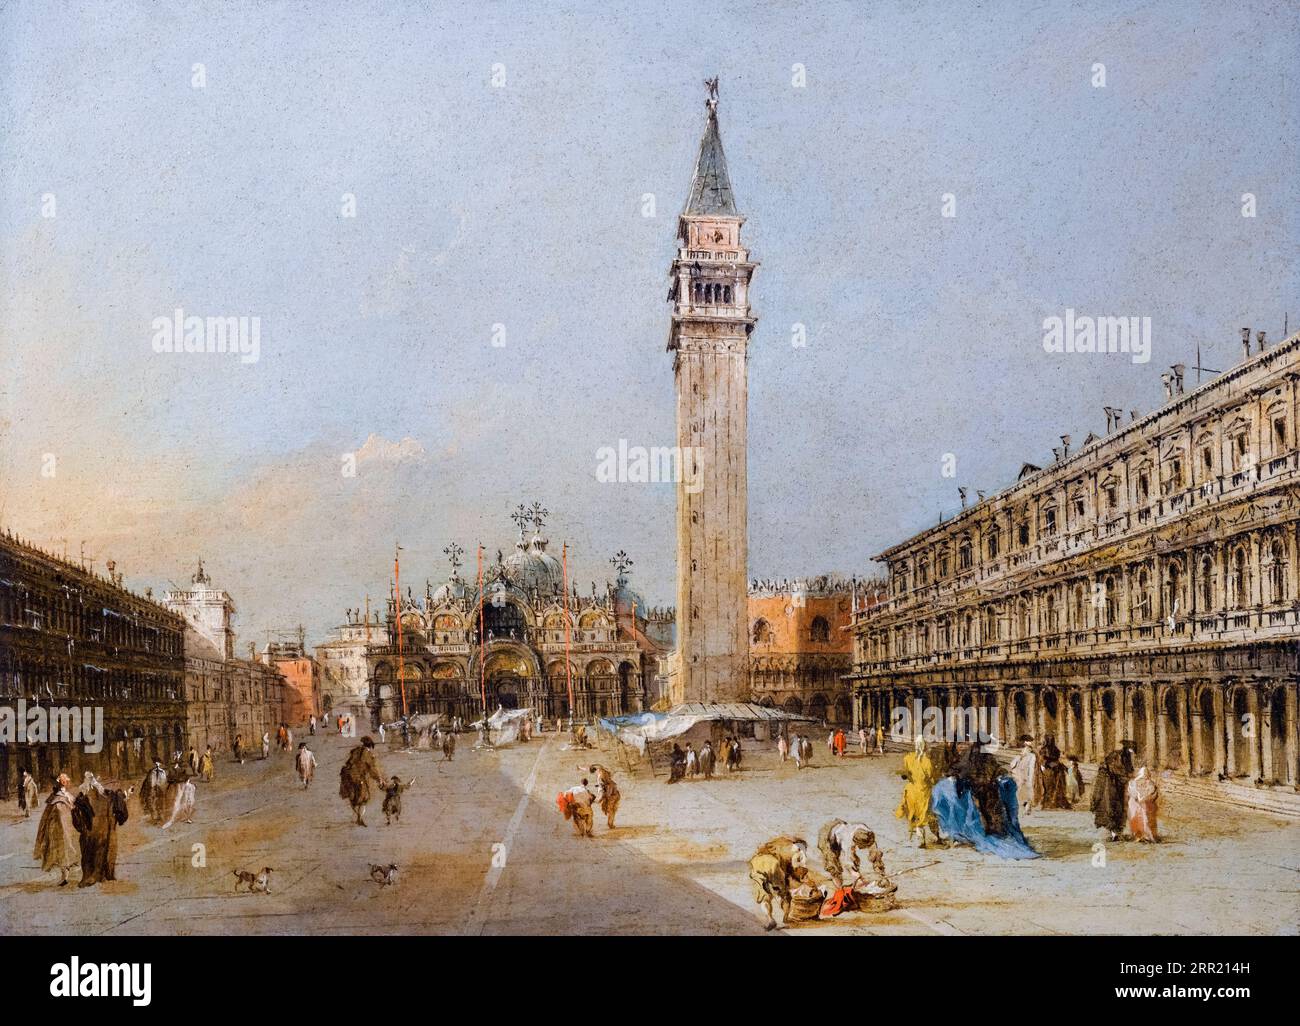 La Piazza San Marco avec la Basilique et Campanile, peinture de paysage à l'huile sur panneau par Francesco Guardi, 1775-1785 Banque D'Images